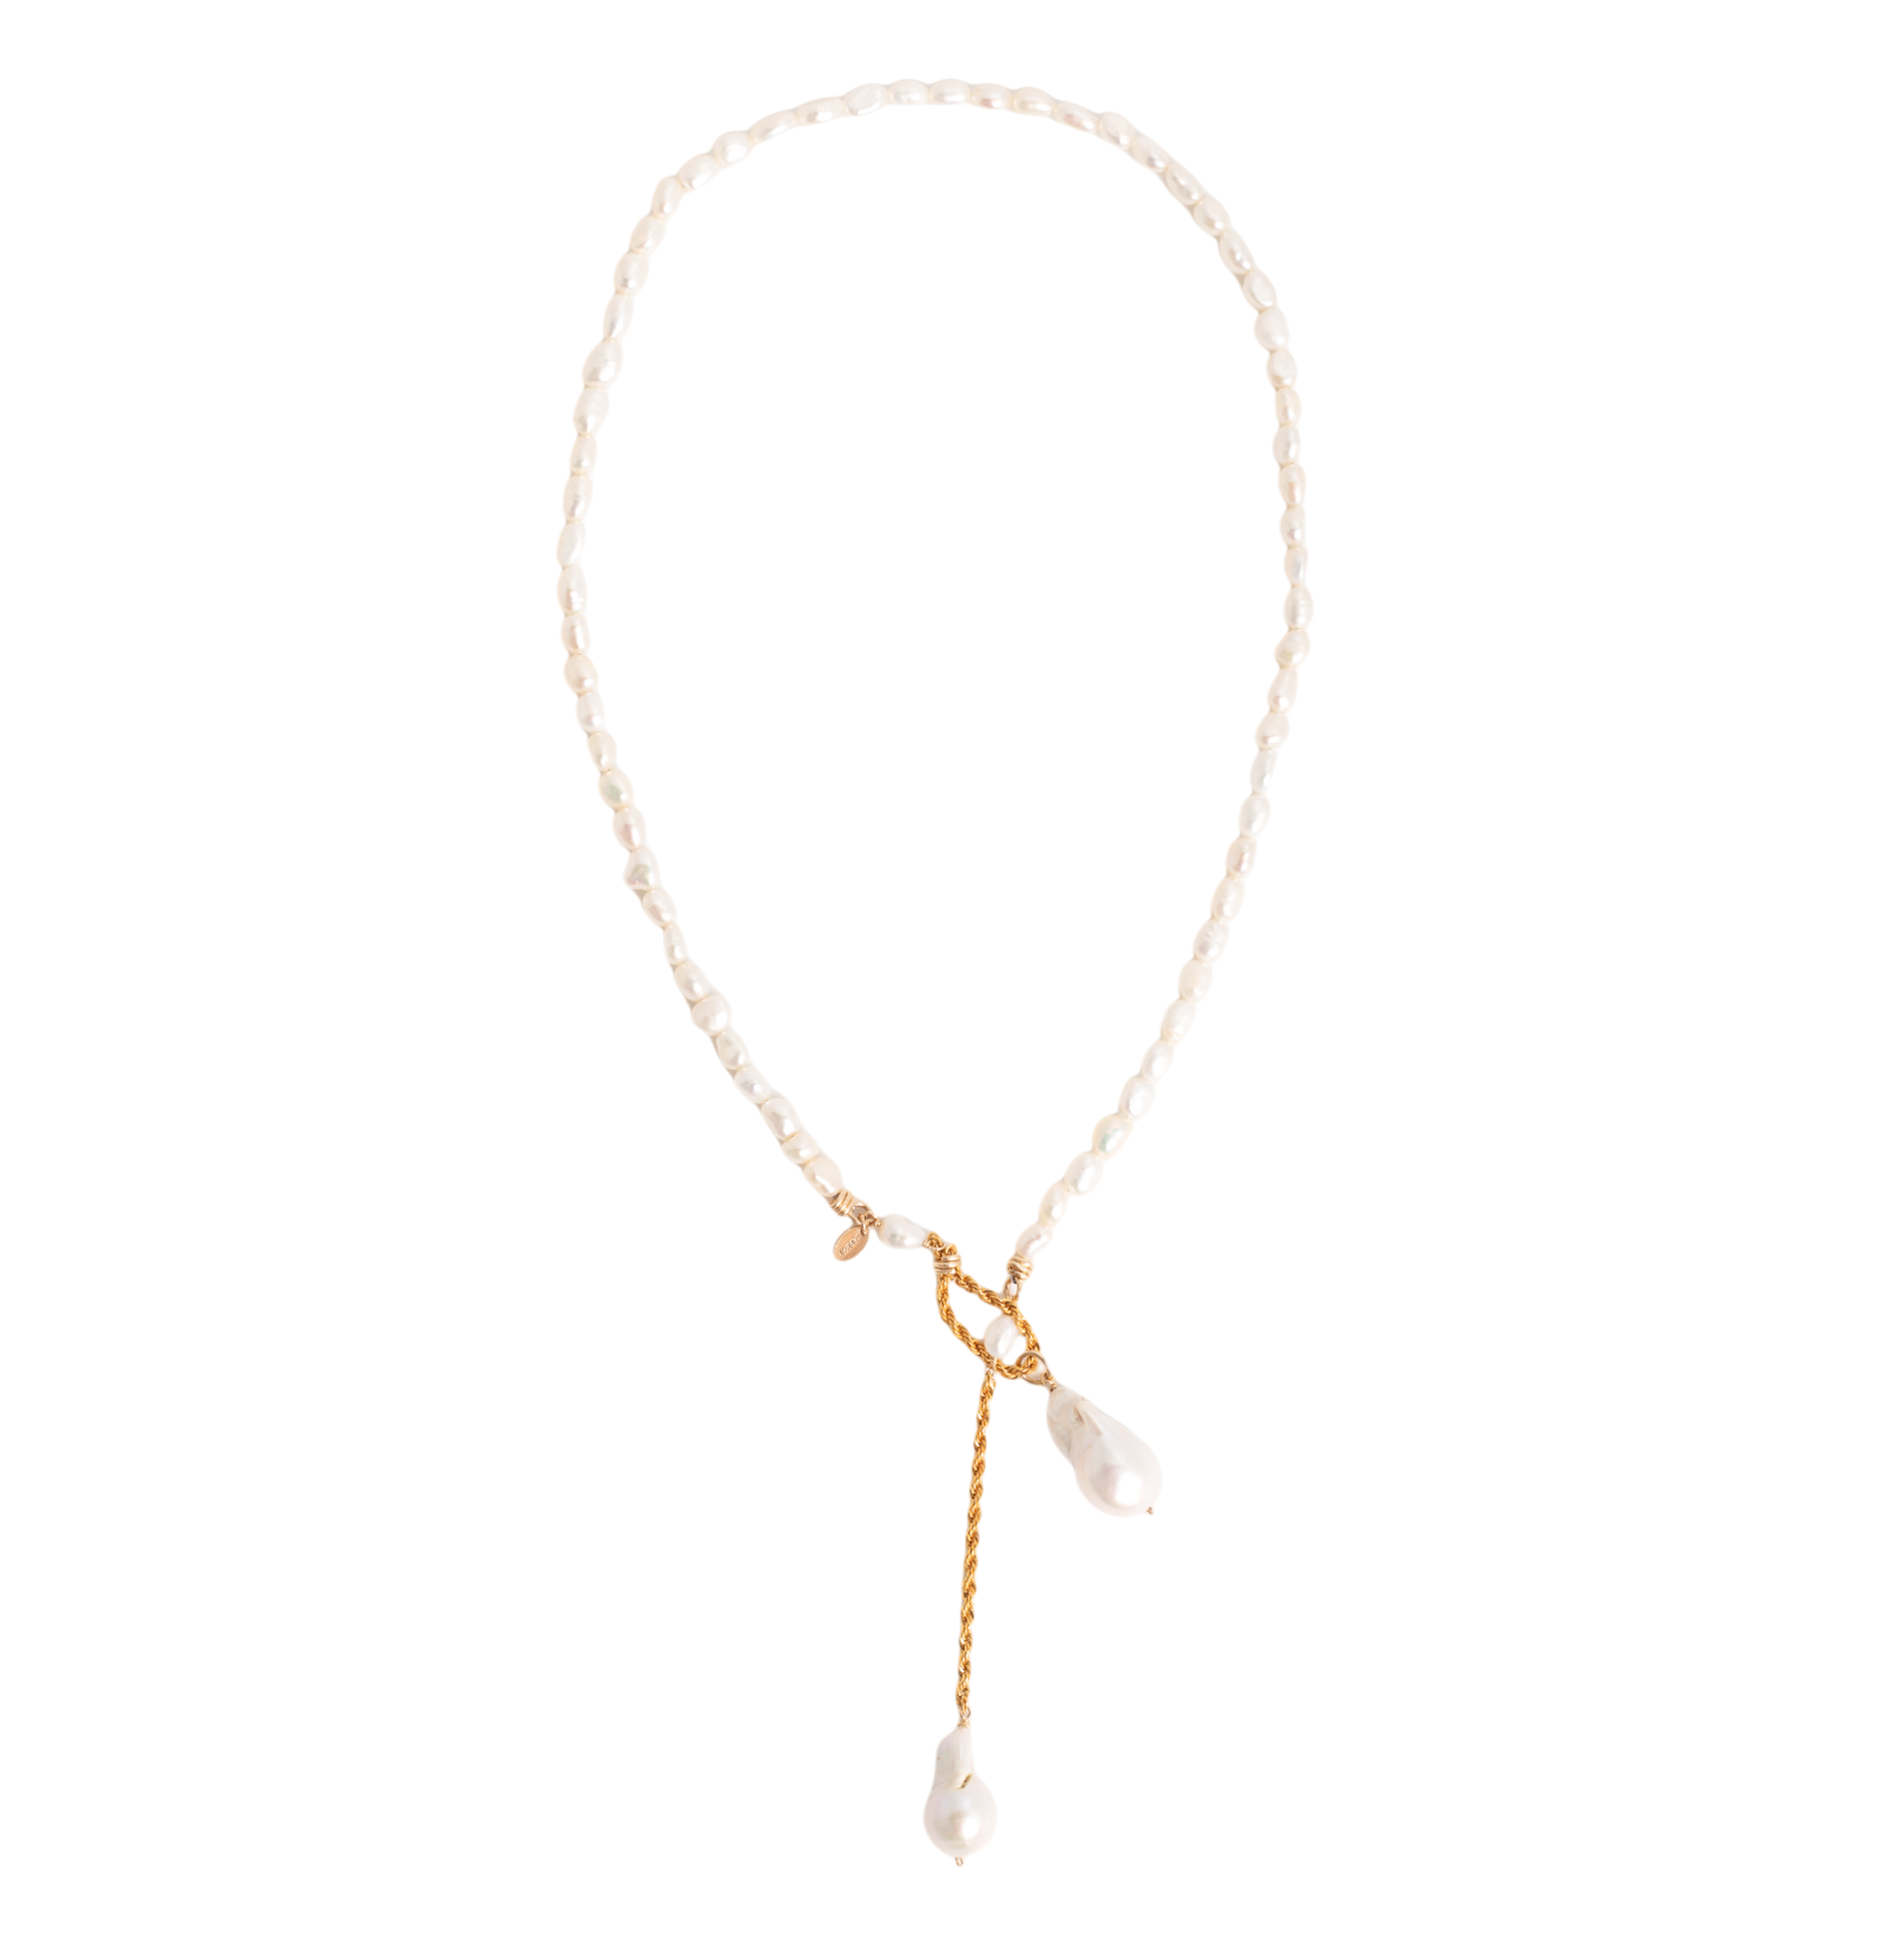 Barroca Necklace #4 - Pearl Necklaces TARBAY   